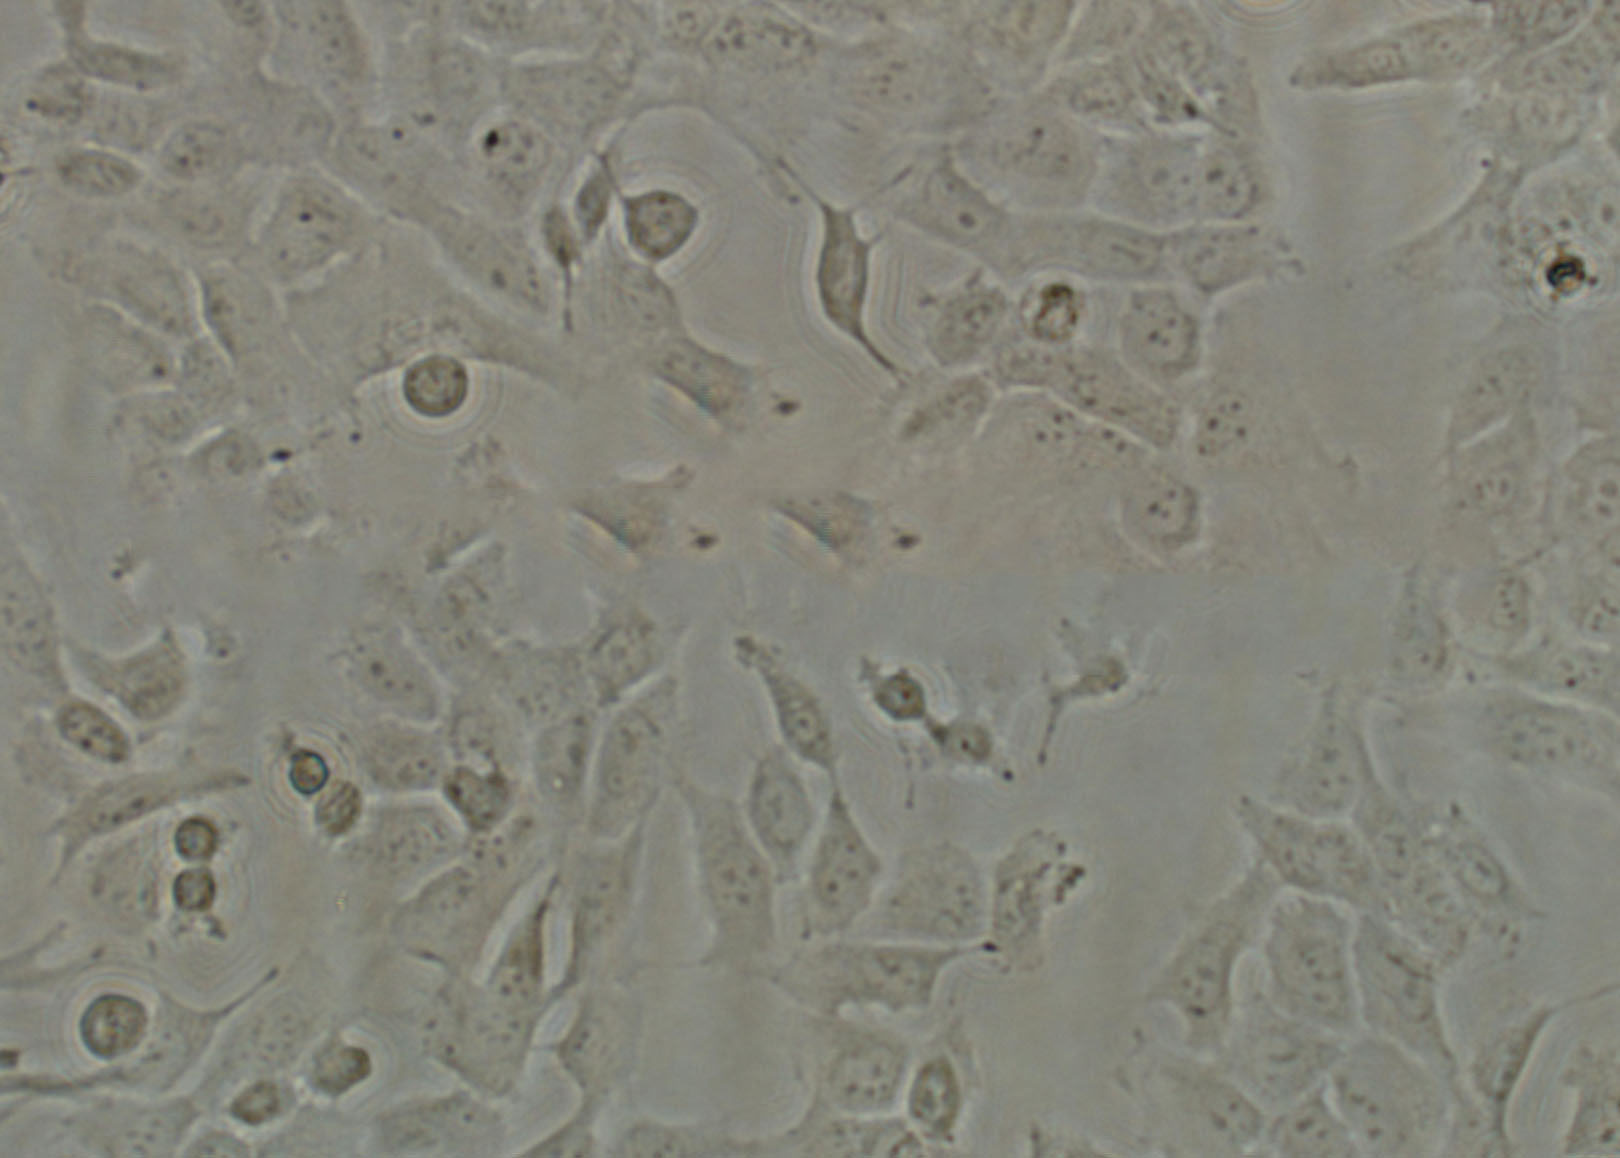 SK-MEL-5 Cell|人恶性黑色素瘤细胞,SK-MEL-5 Cell